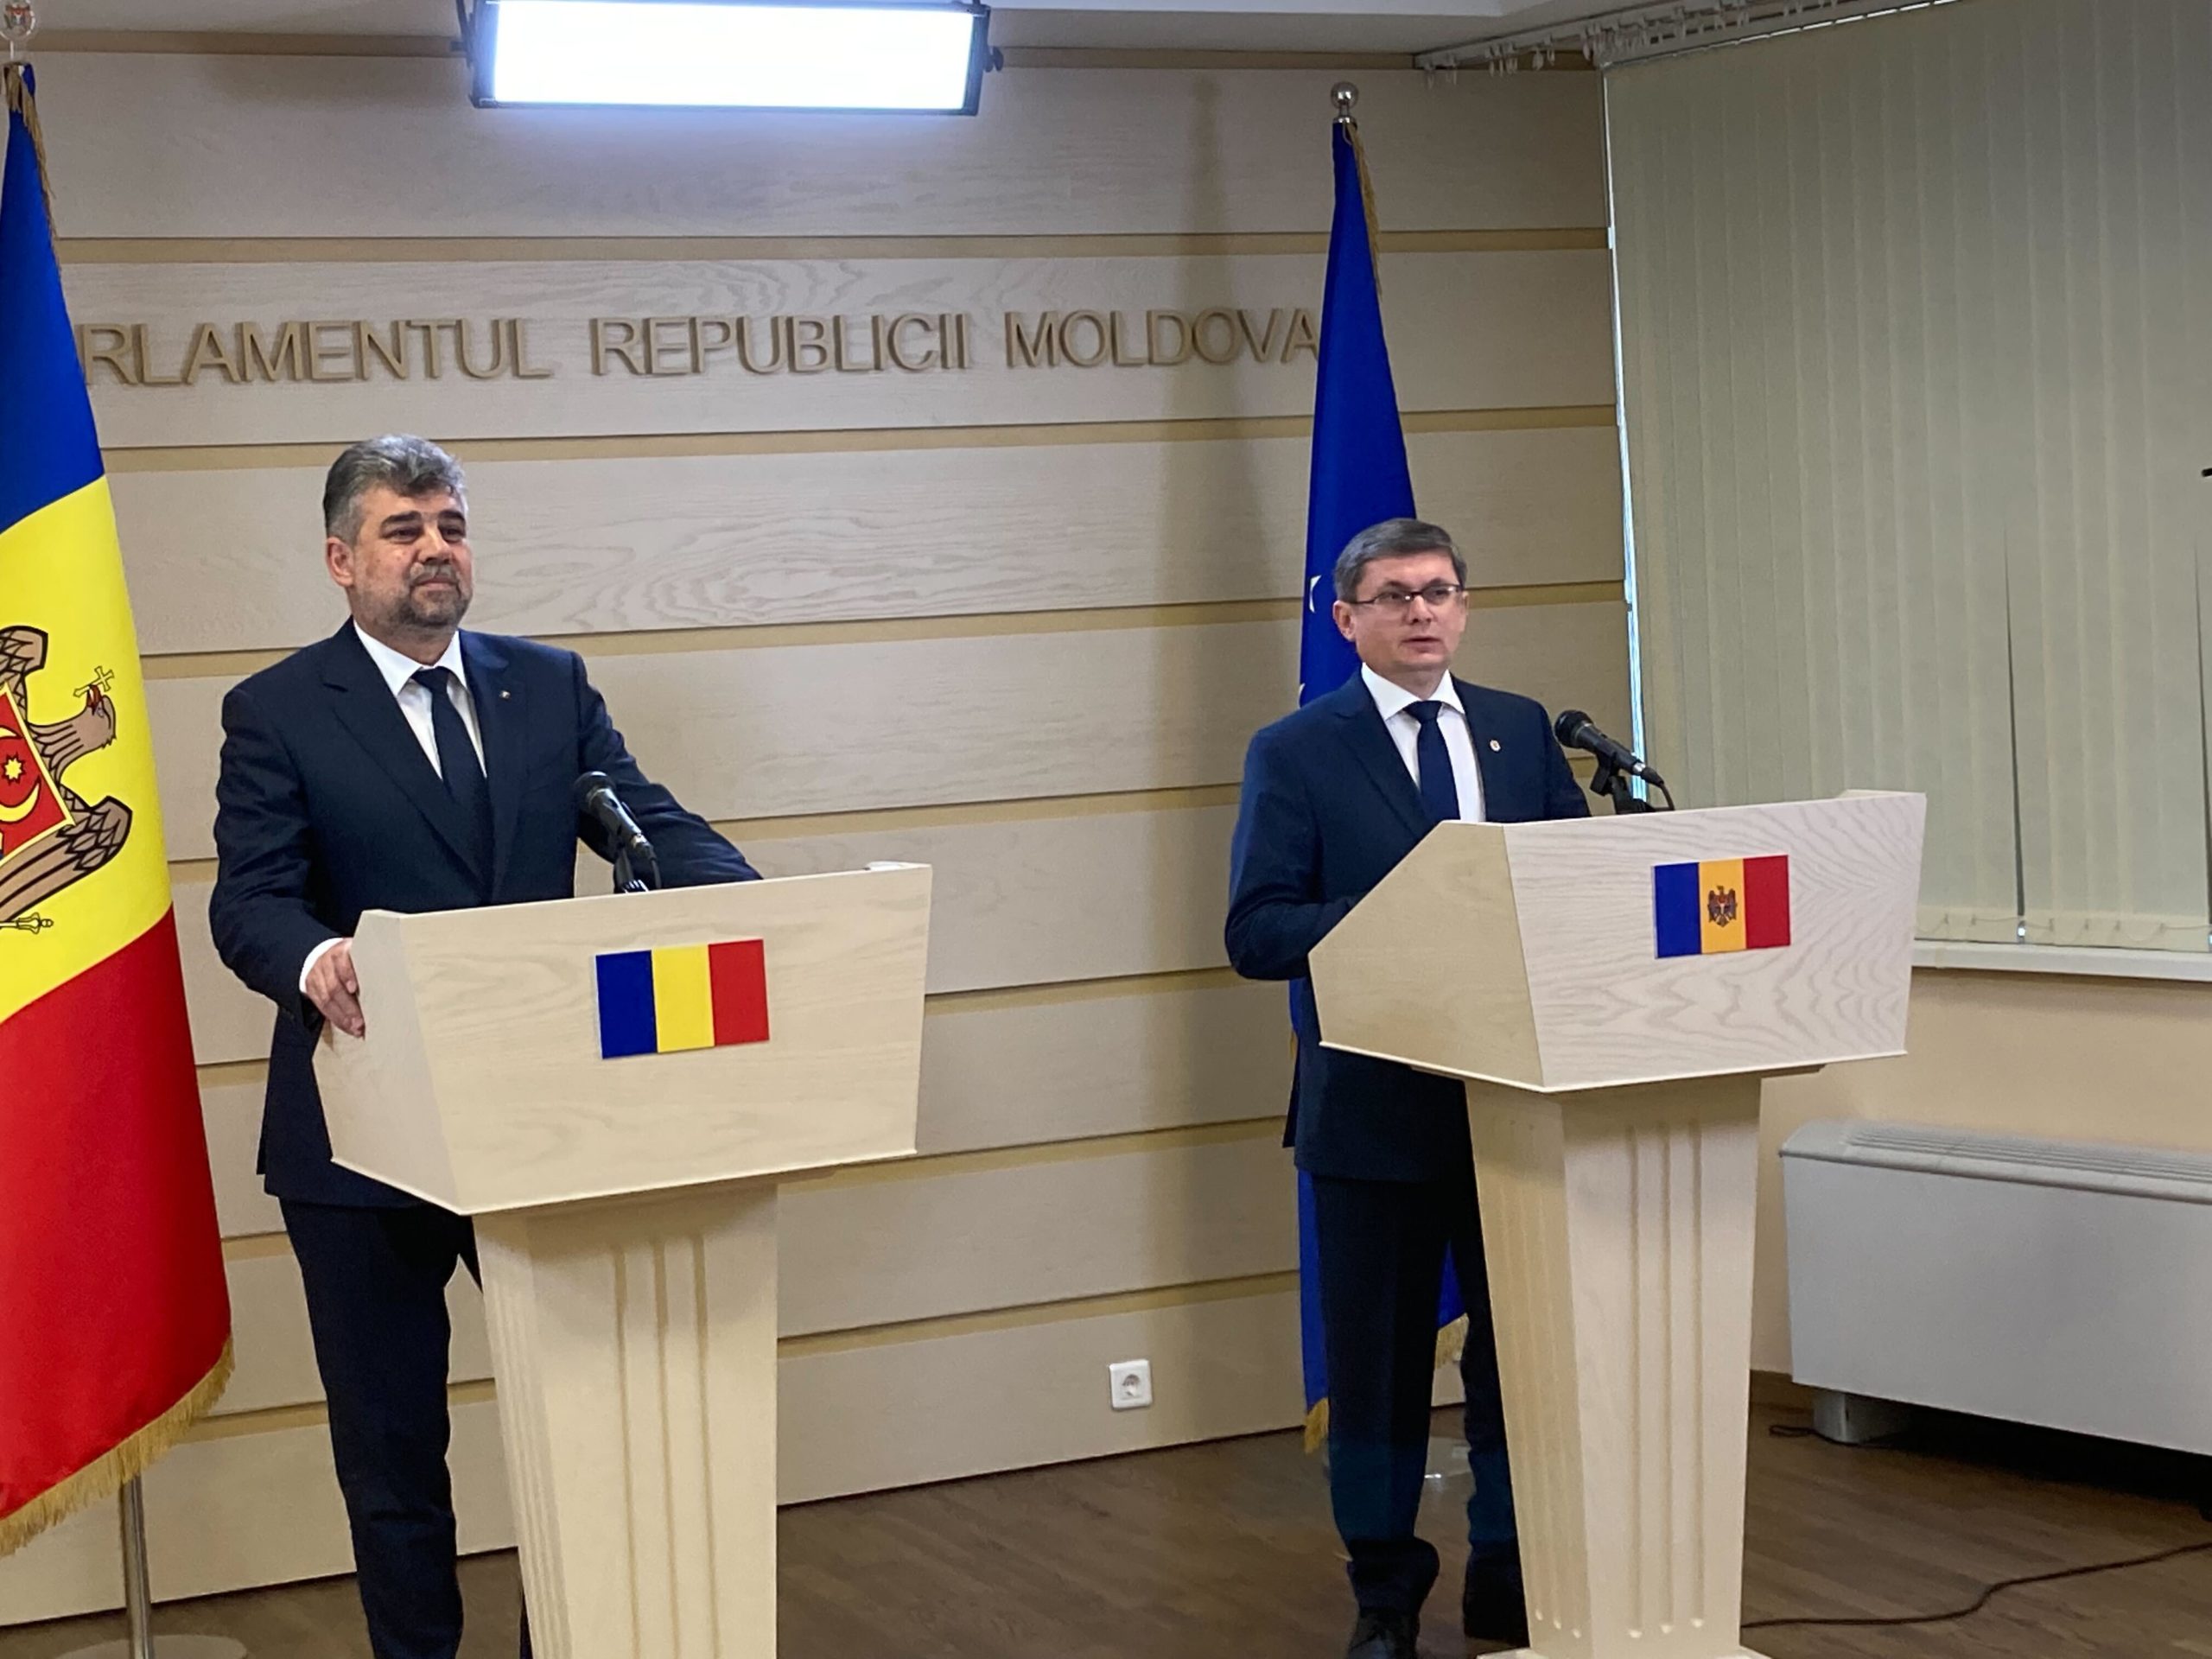 Парламенты Молдовы и Румынии назначили совместное заседание. Оно пройдет в Кишиневе